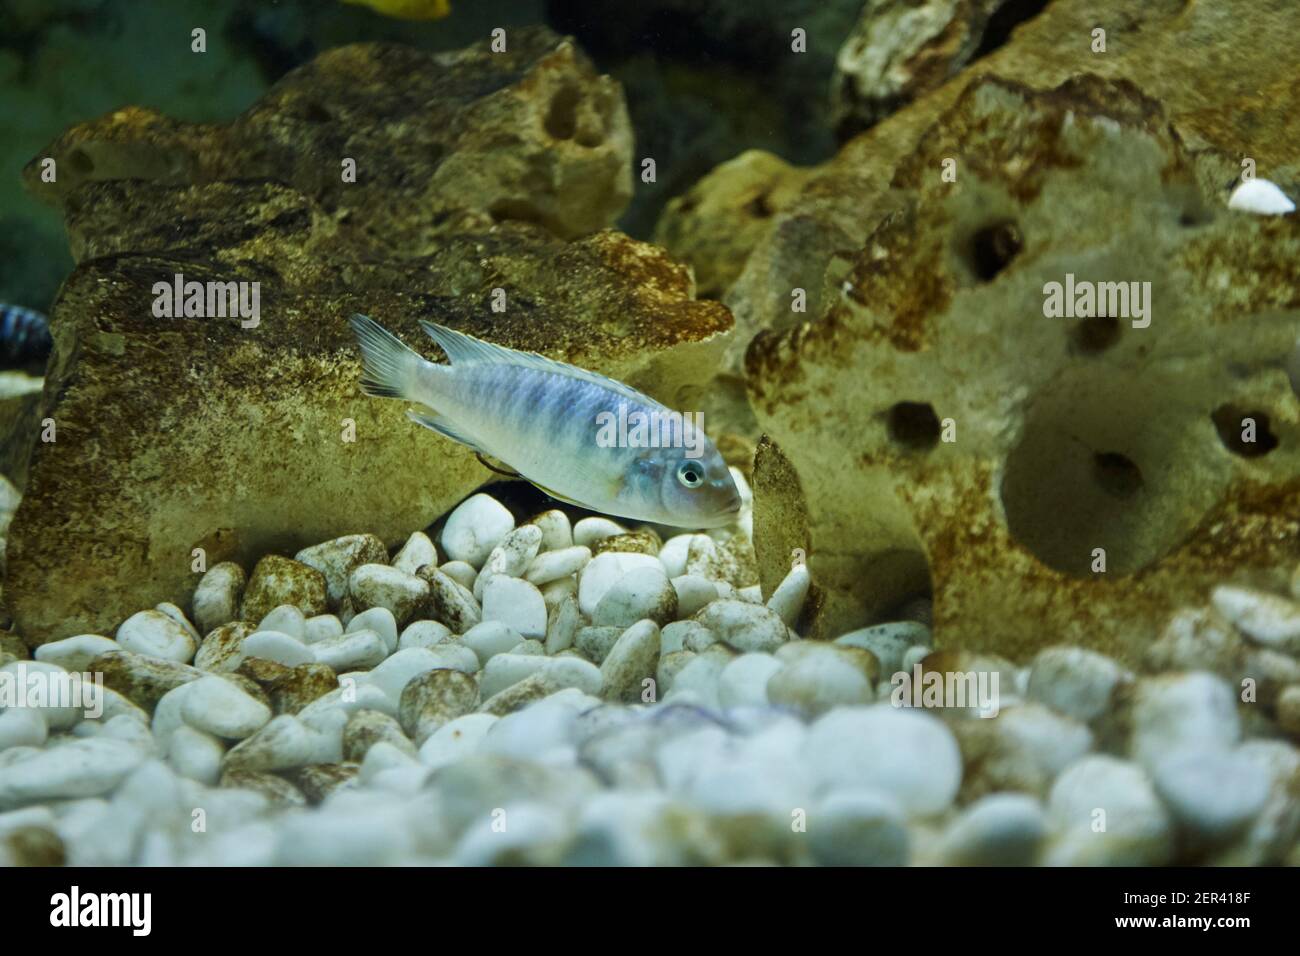 Pseudotropheus zebra cichlid aquarium fish. aquatic life Stock Photo